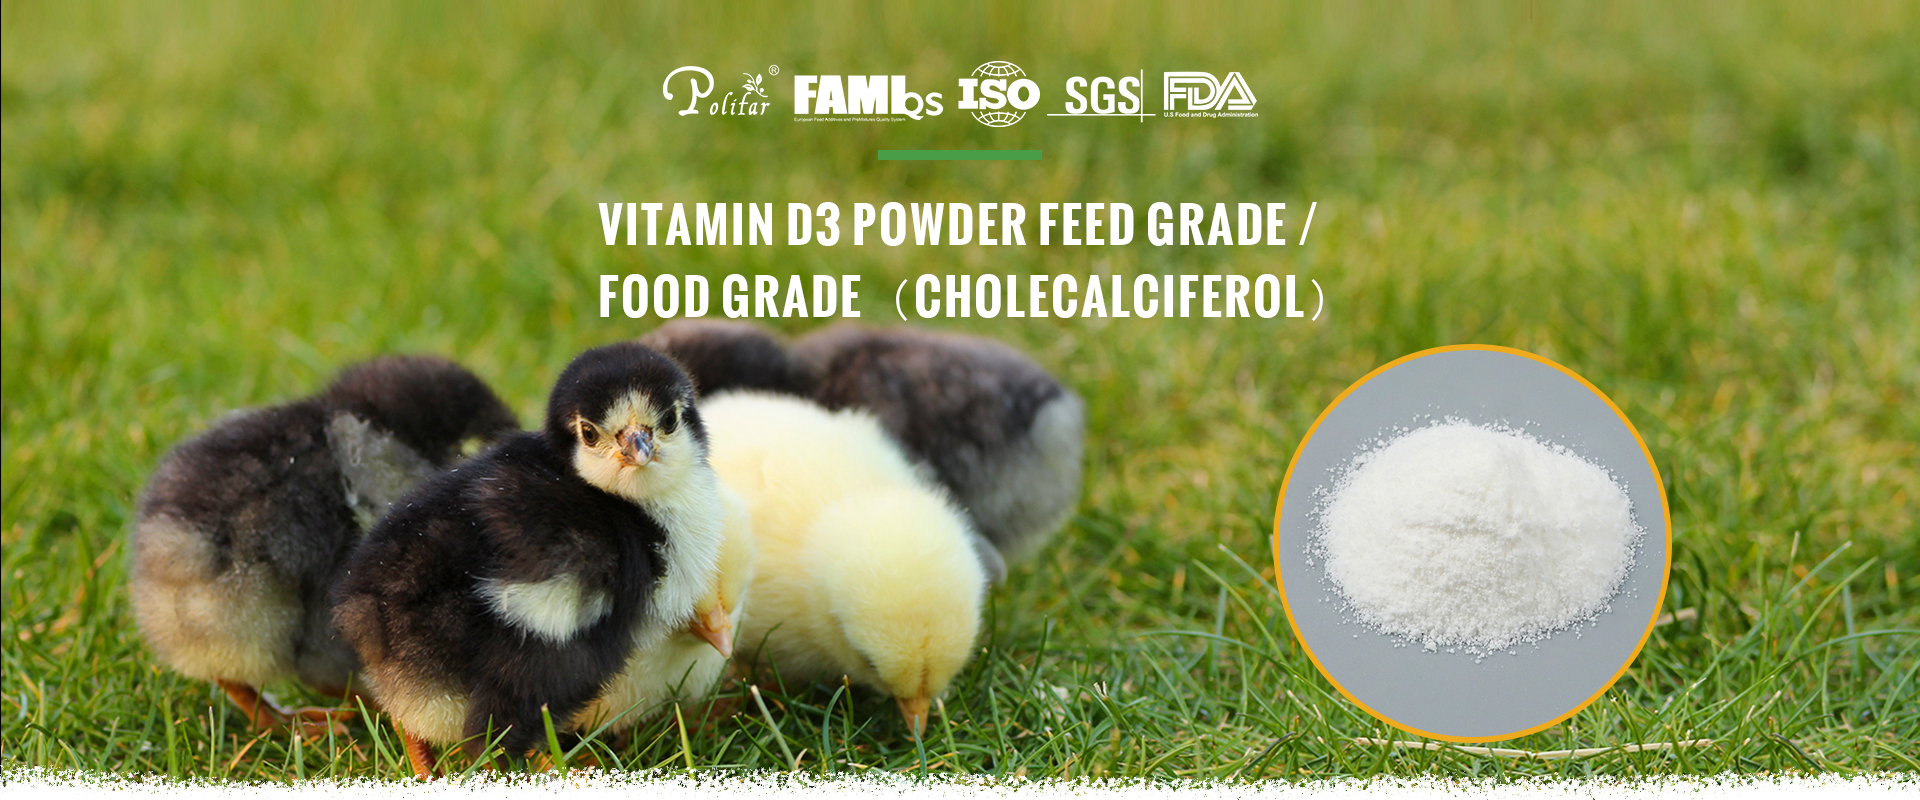 Feed Grade Vitamin D3 Powder